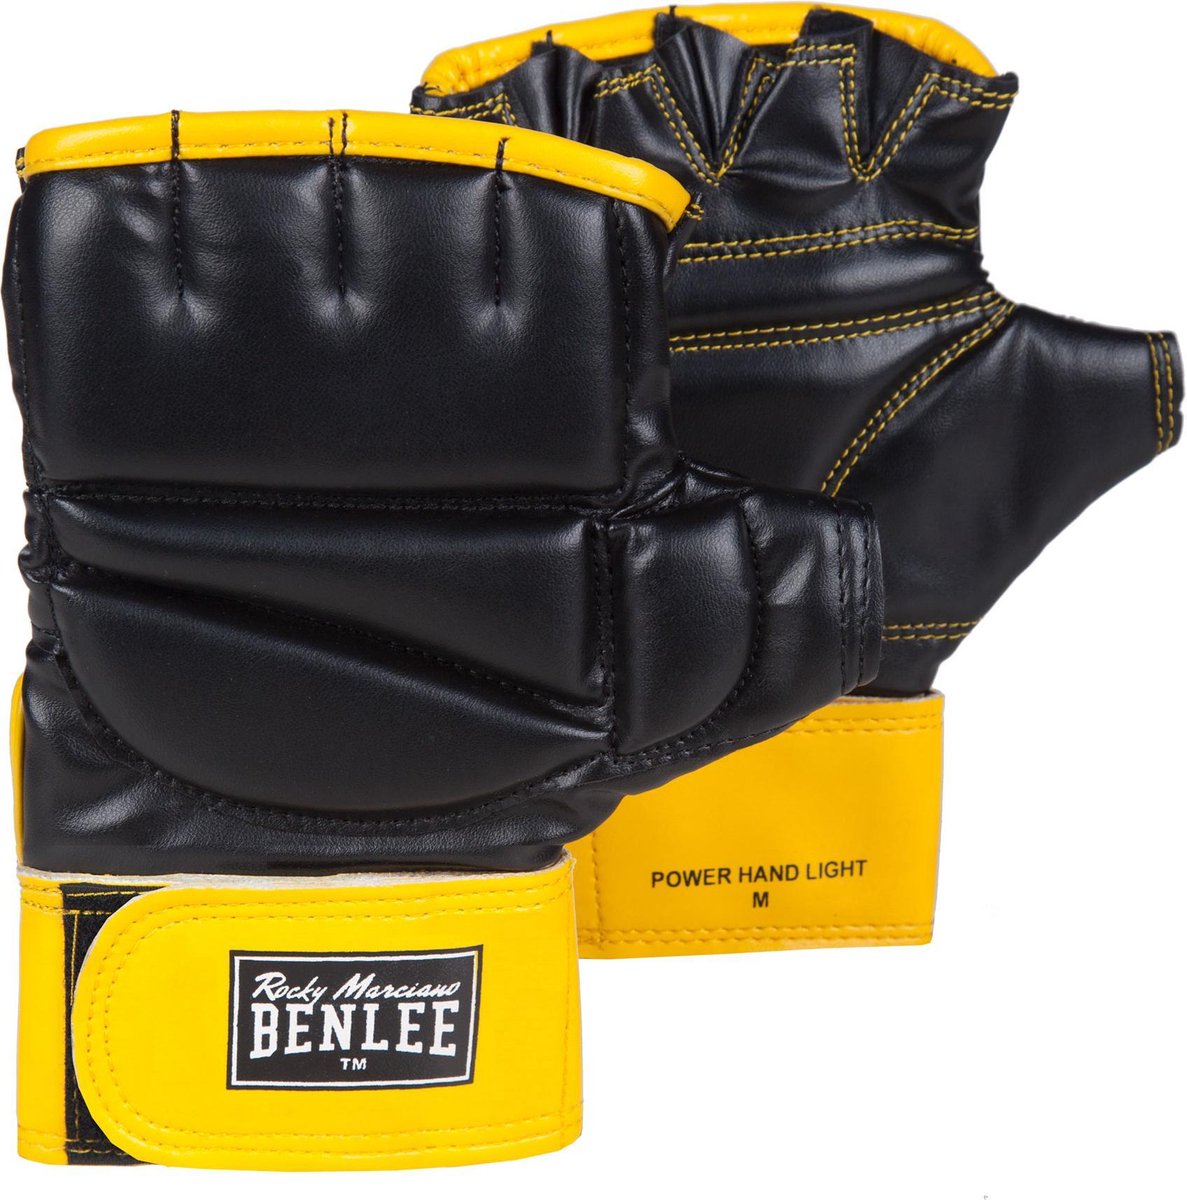 Benlee Power Hand Light Bokszak Handschoenen Vechtsporthandschoenen - Unisex |